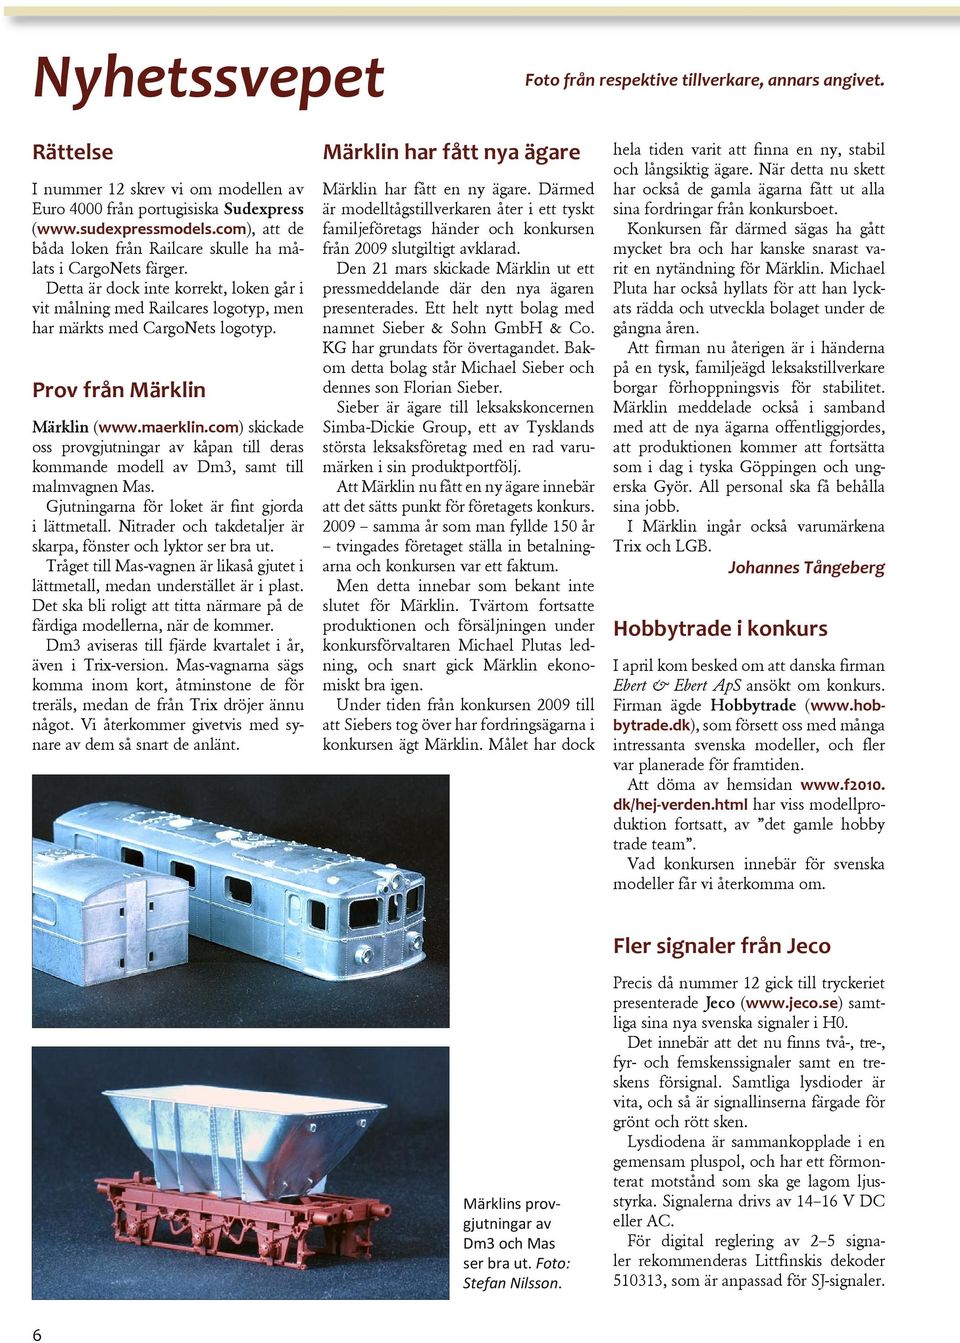 Prov från Märklin Märklin (www.maerklin.com) skickade oss provgjutningar av kåpan till deras kommande modell av Dm3, samt till malmvagnen Mas. Gjutningarna för loket är fint gjorda i lättmetall.